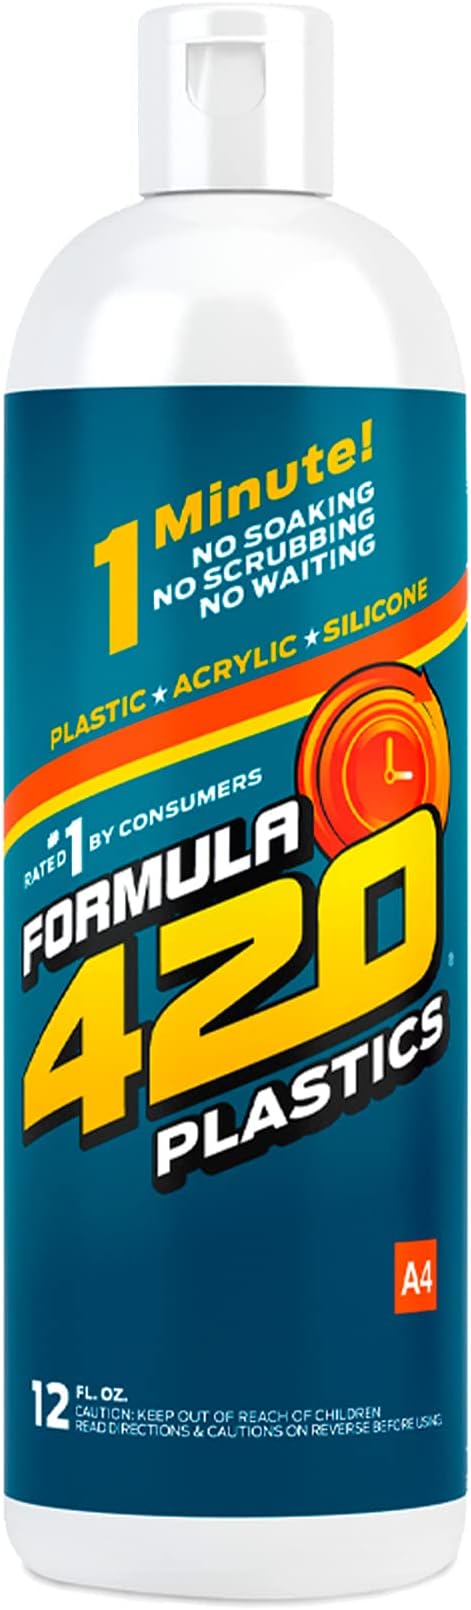 Formula 420 Plastics & Silicone Cleaner 12oz